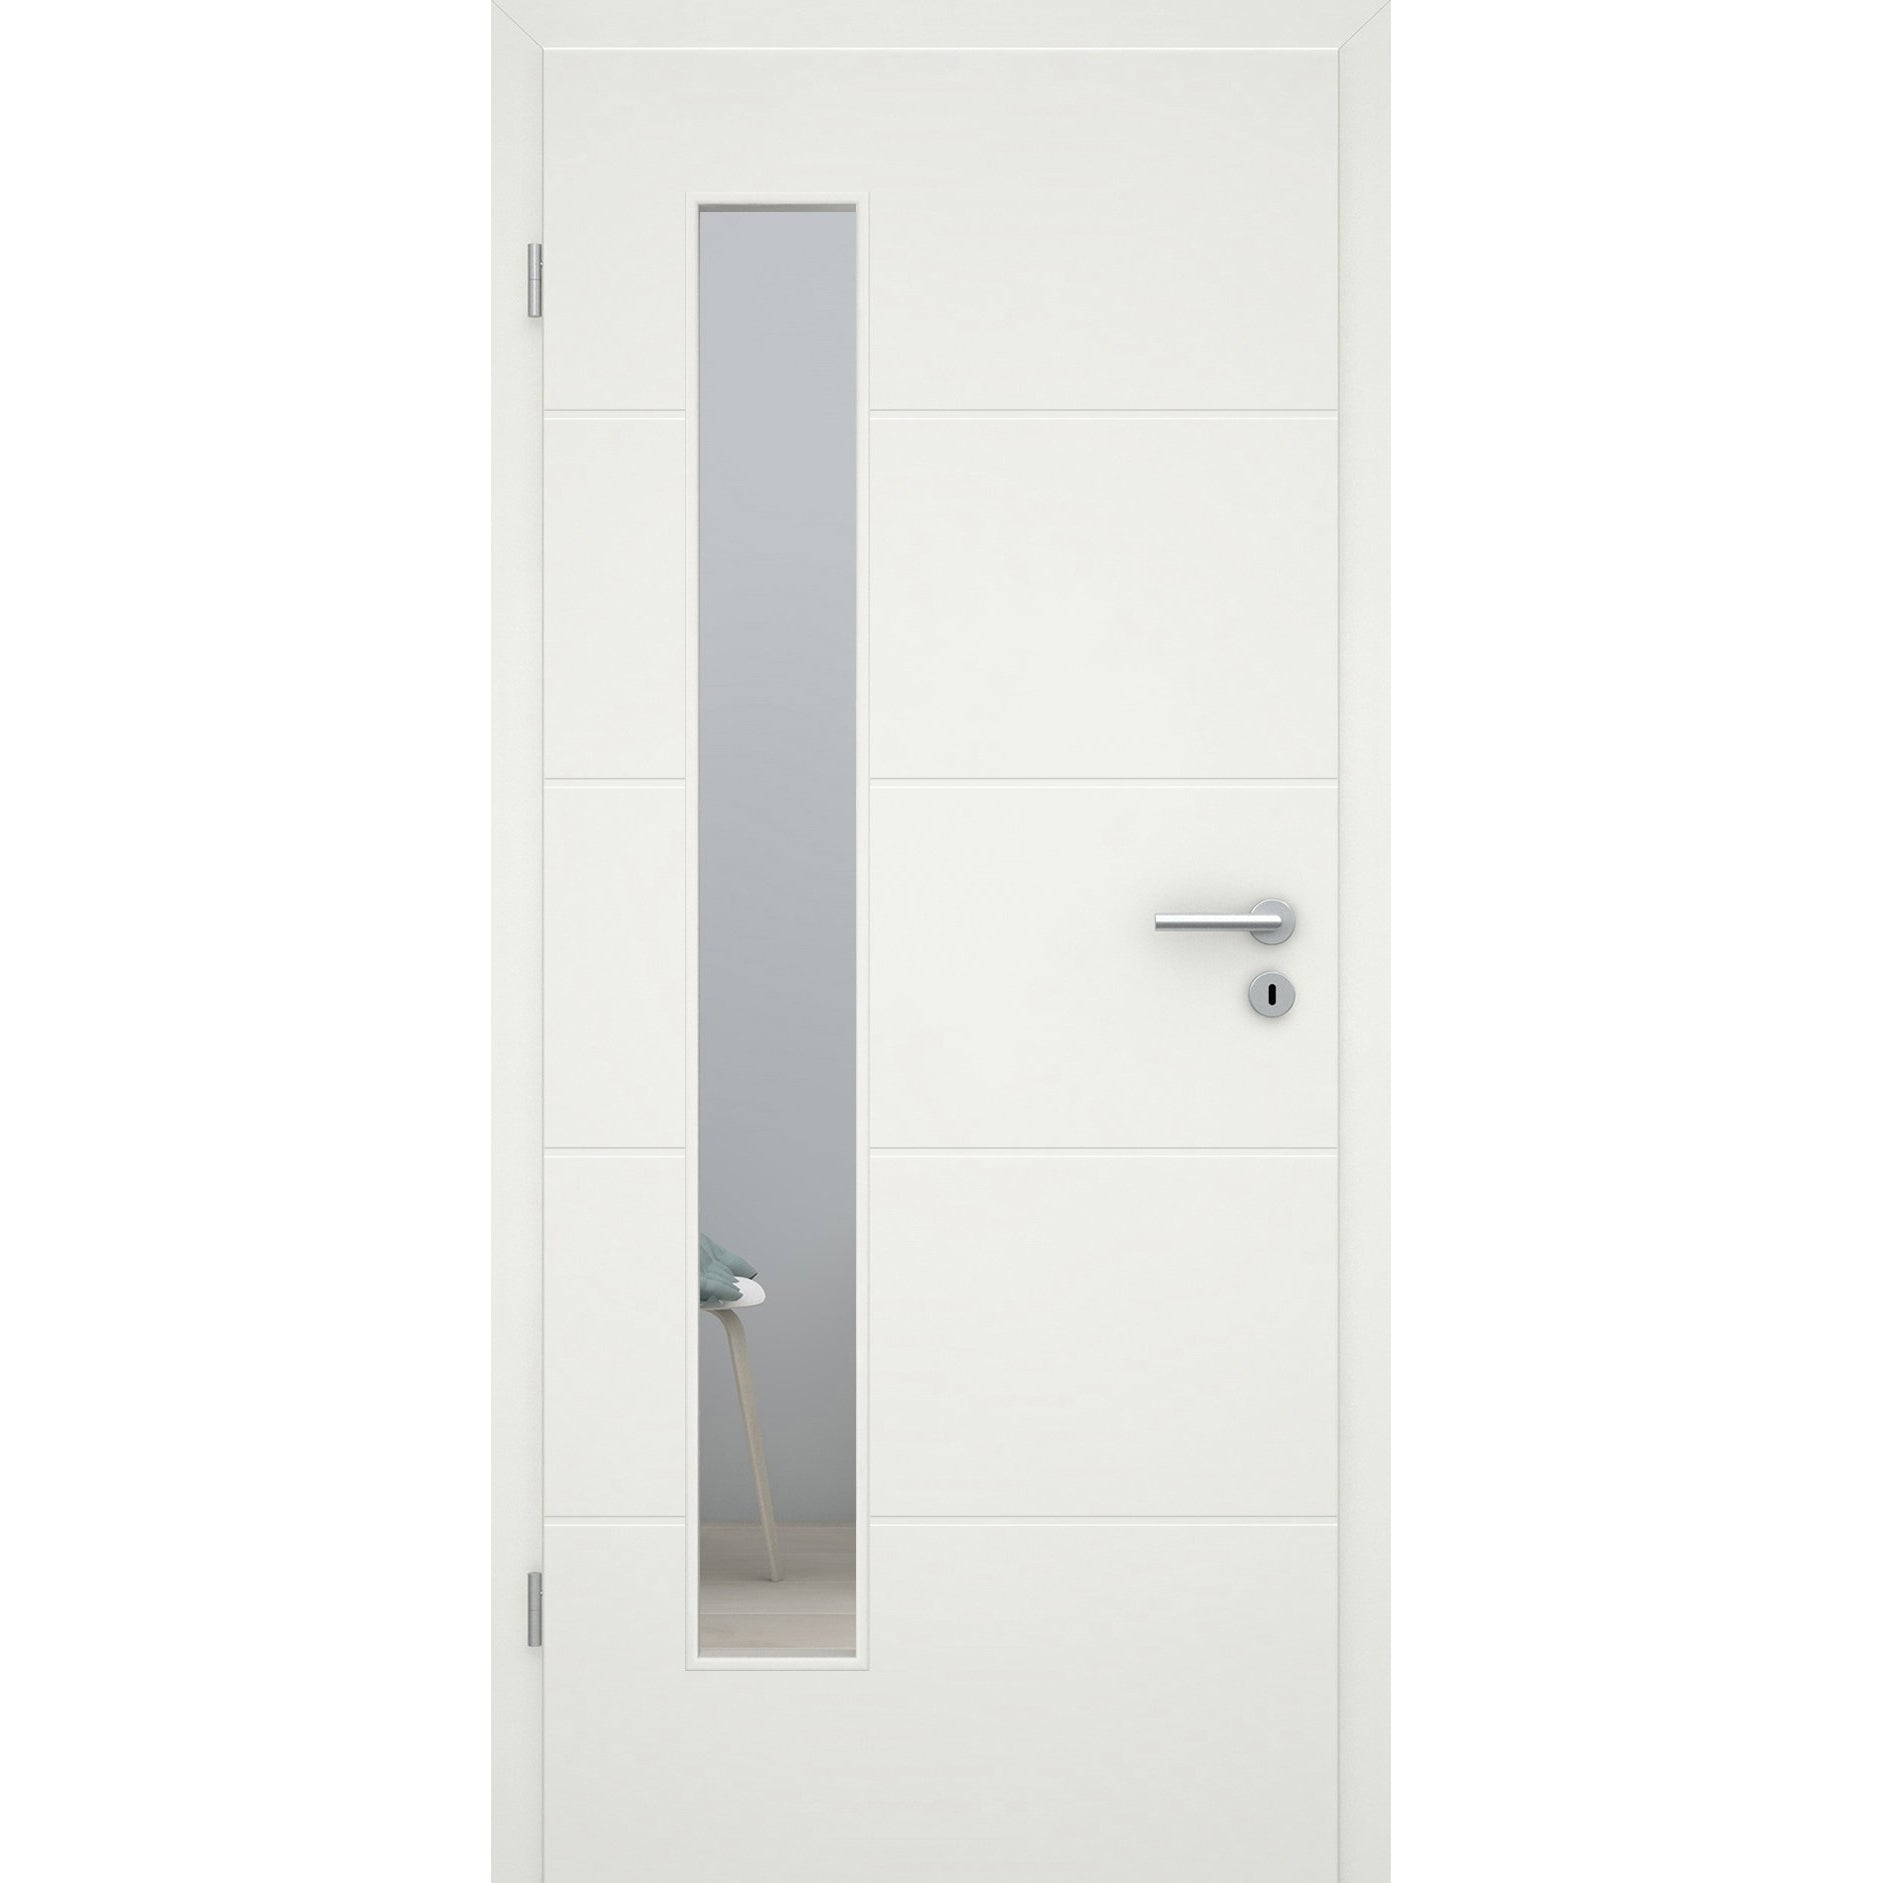 Zimmertür mit Lichtausschnitt soft-weiß 4 Rillen Eckkante - Modell Designtür Q41LAB